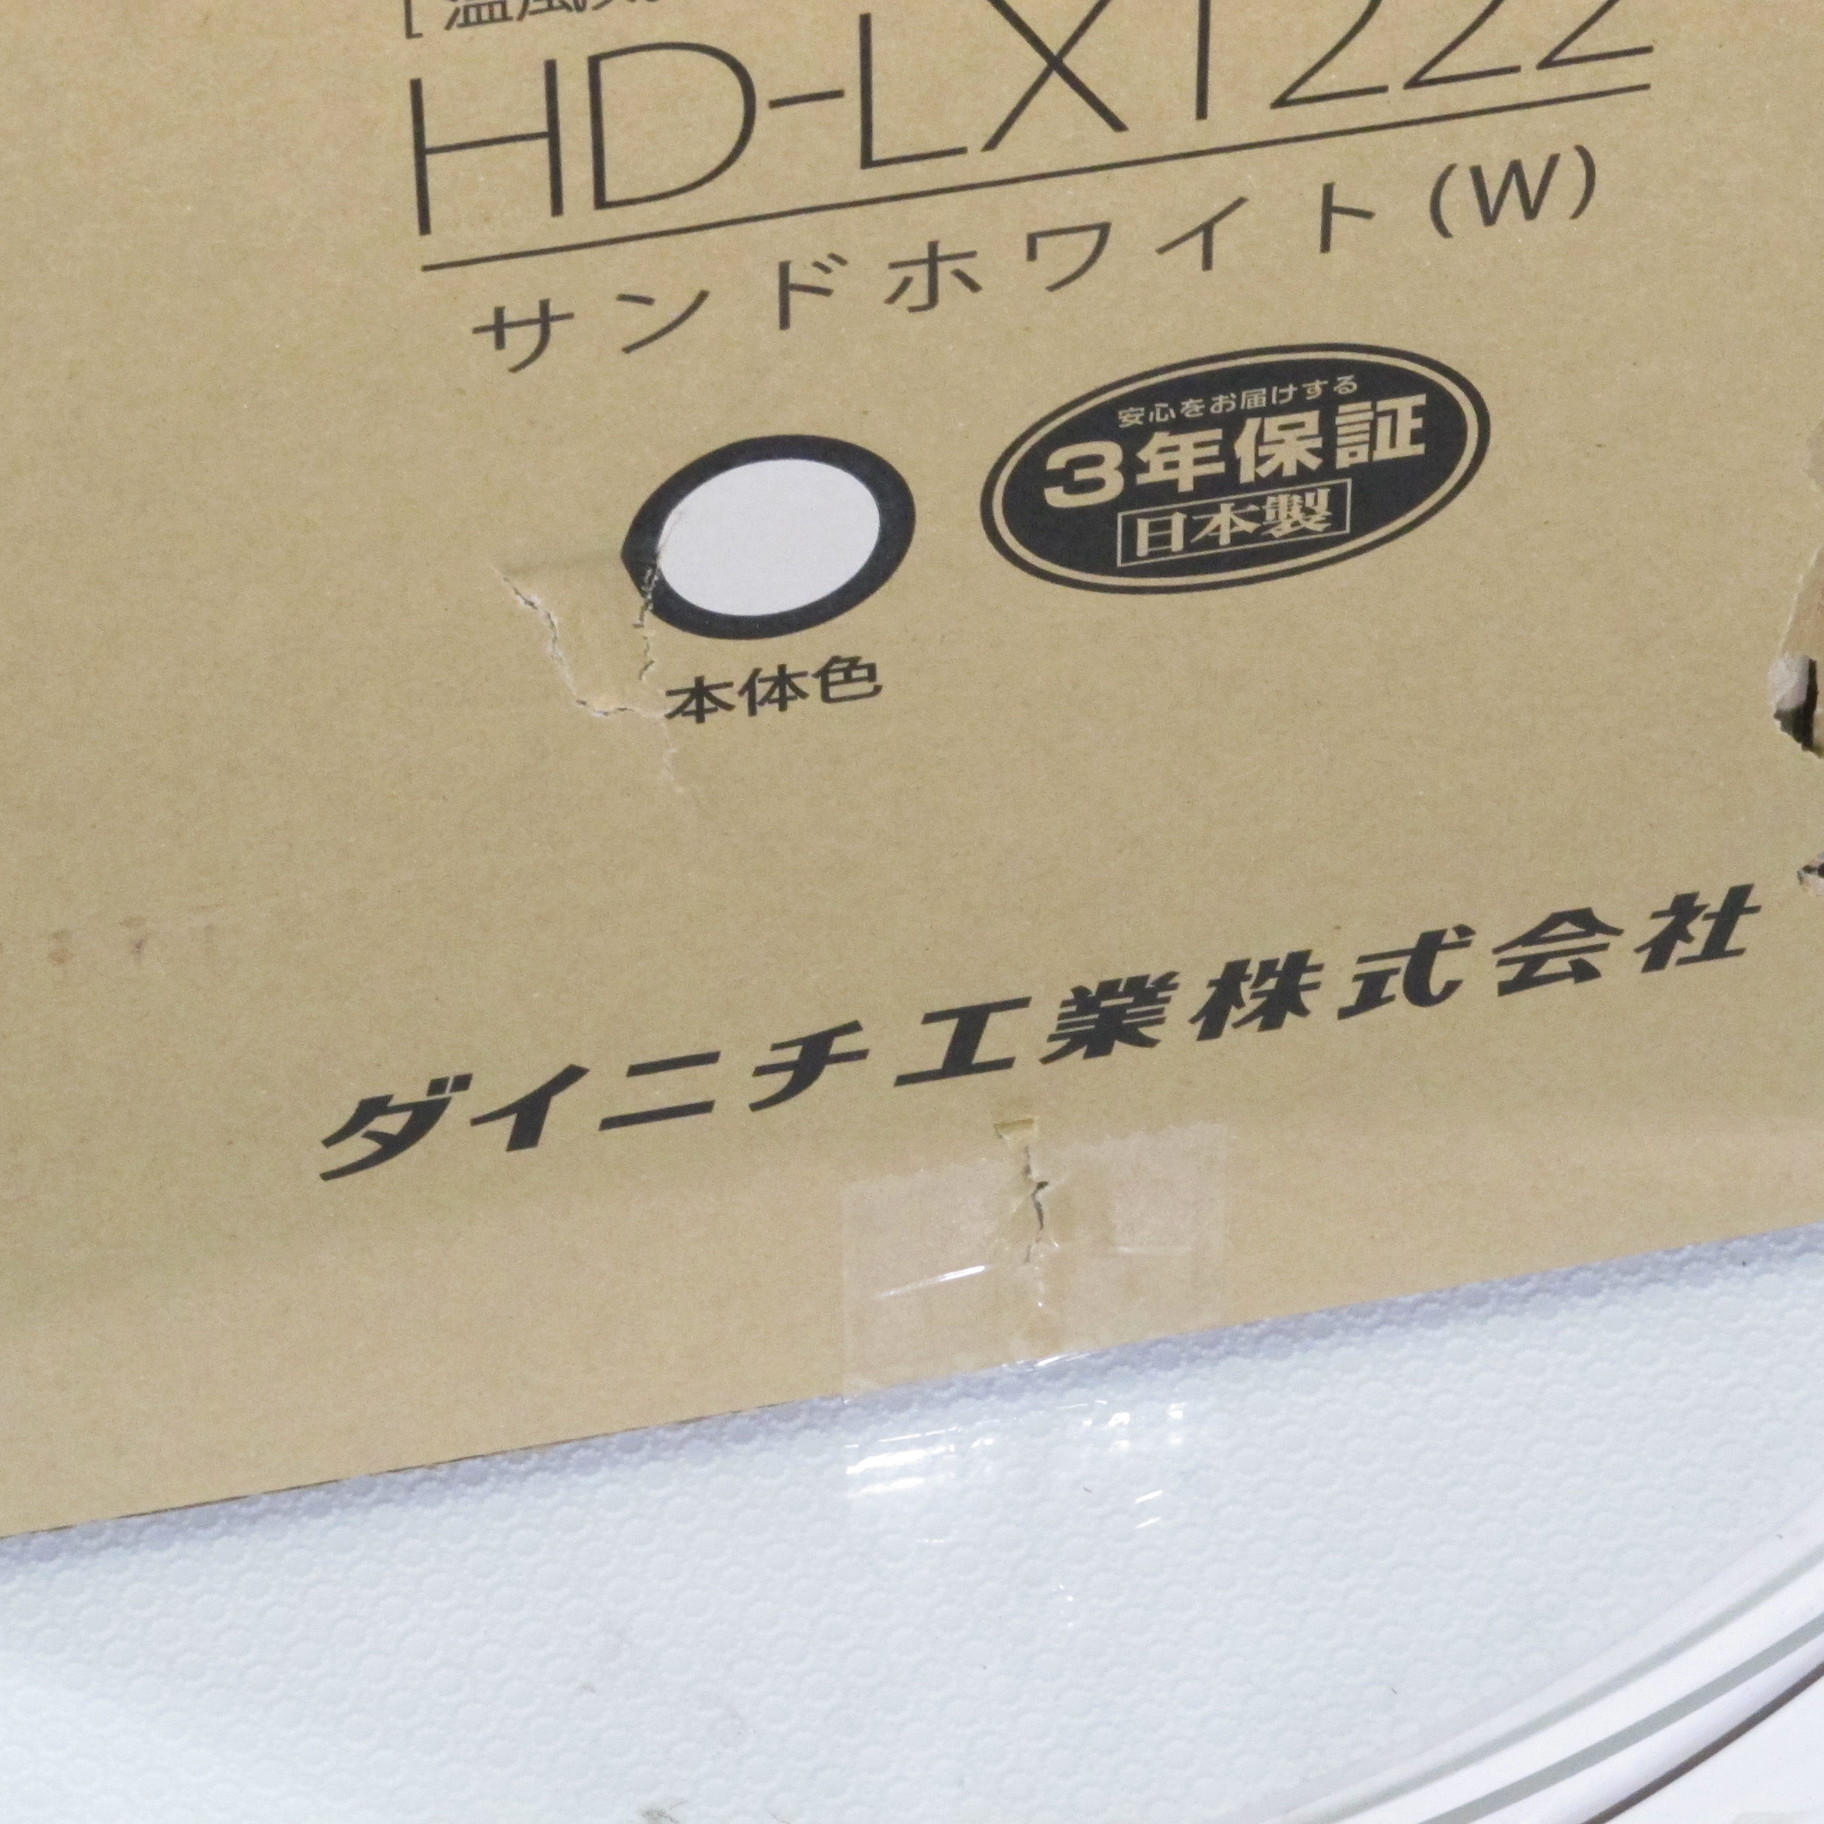 中古】ハイブリッド式加湿器 Dainichi Plus サンドホワイト HD-LX1222